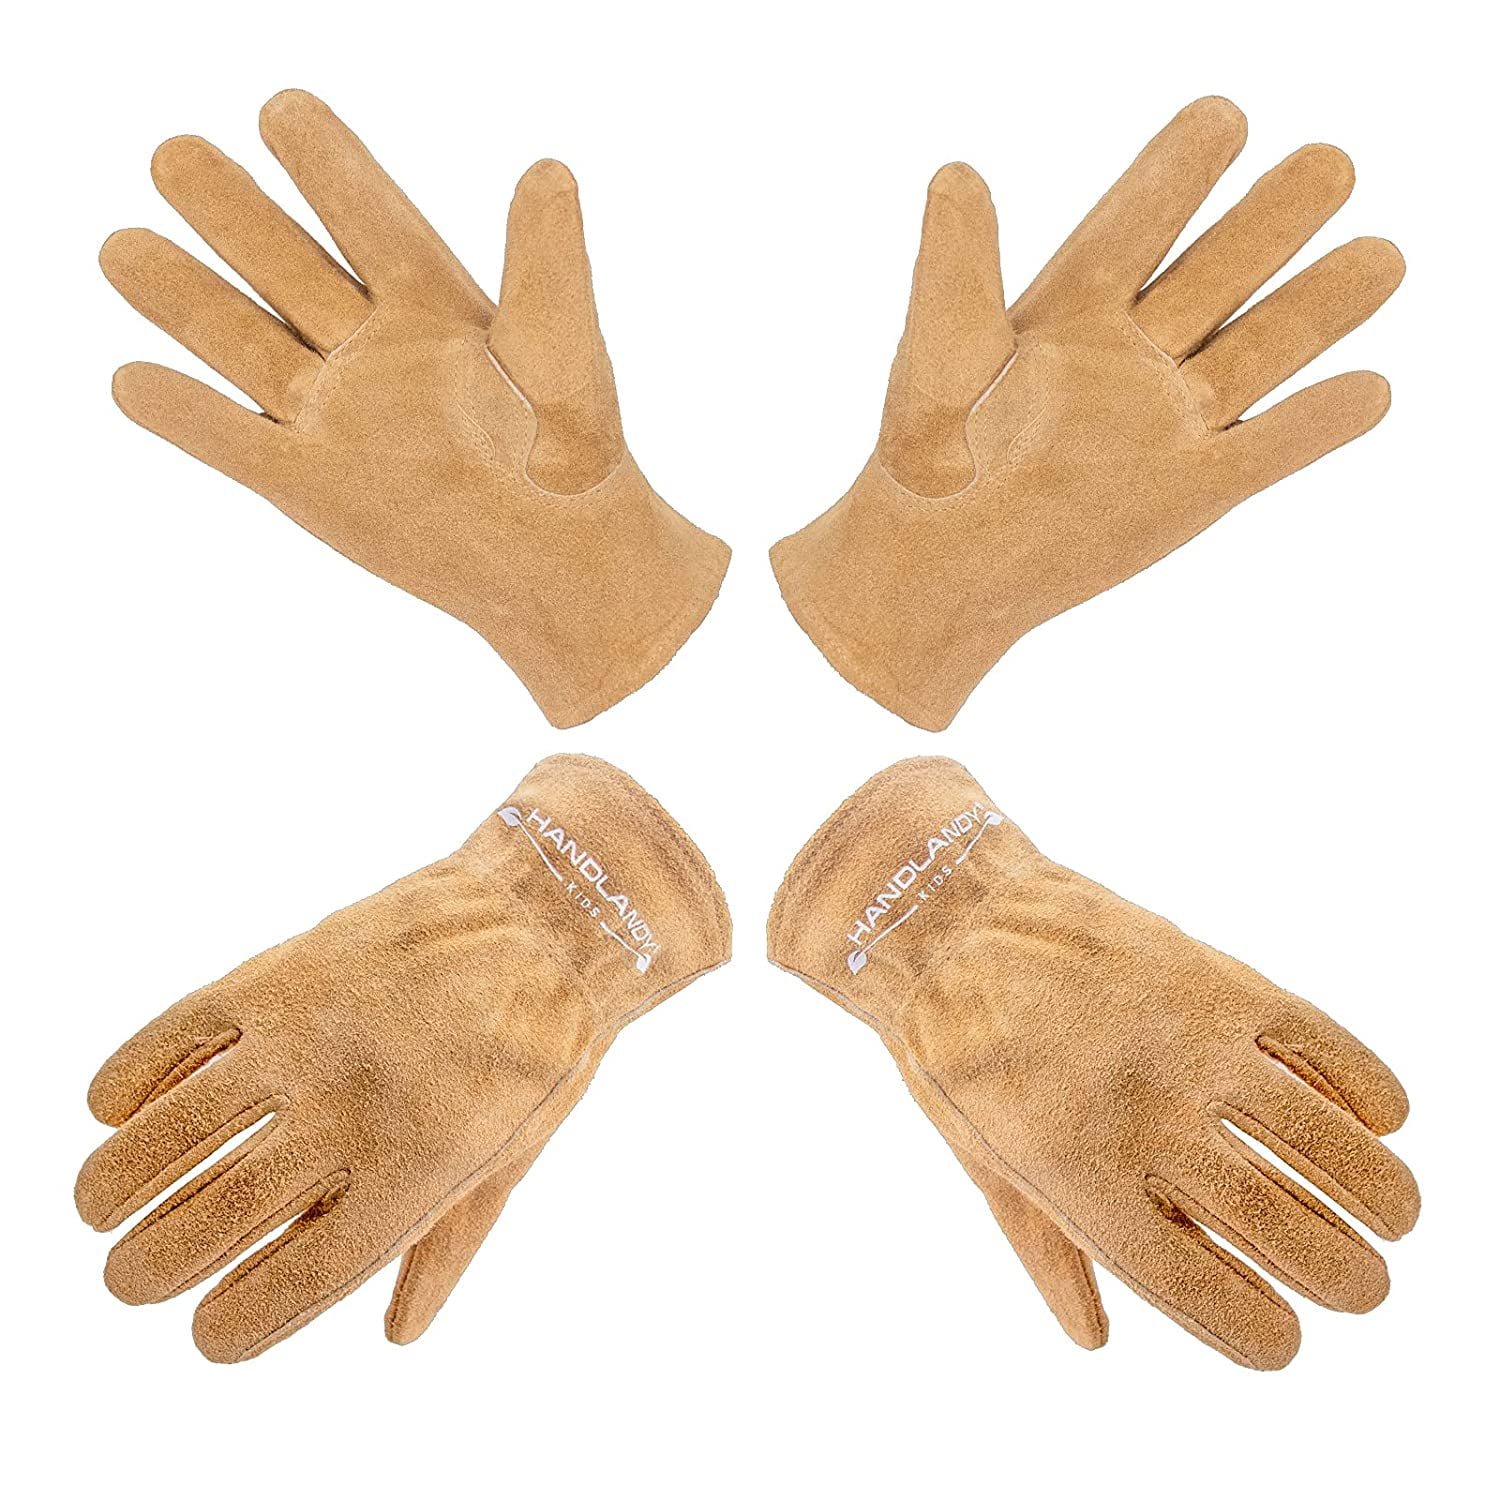 Kids Leather Work Gloves Children Cowhide Garden Gloves for Age 2-9 Girls Boys 